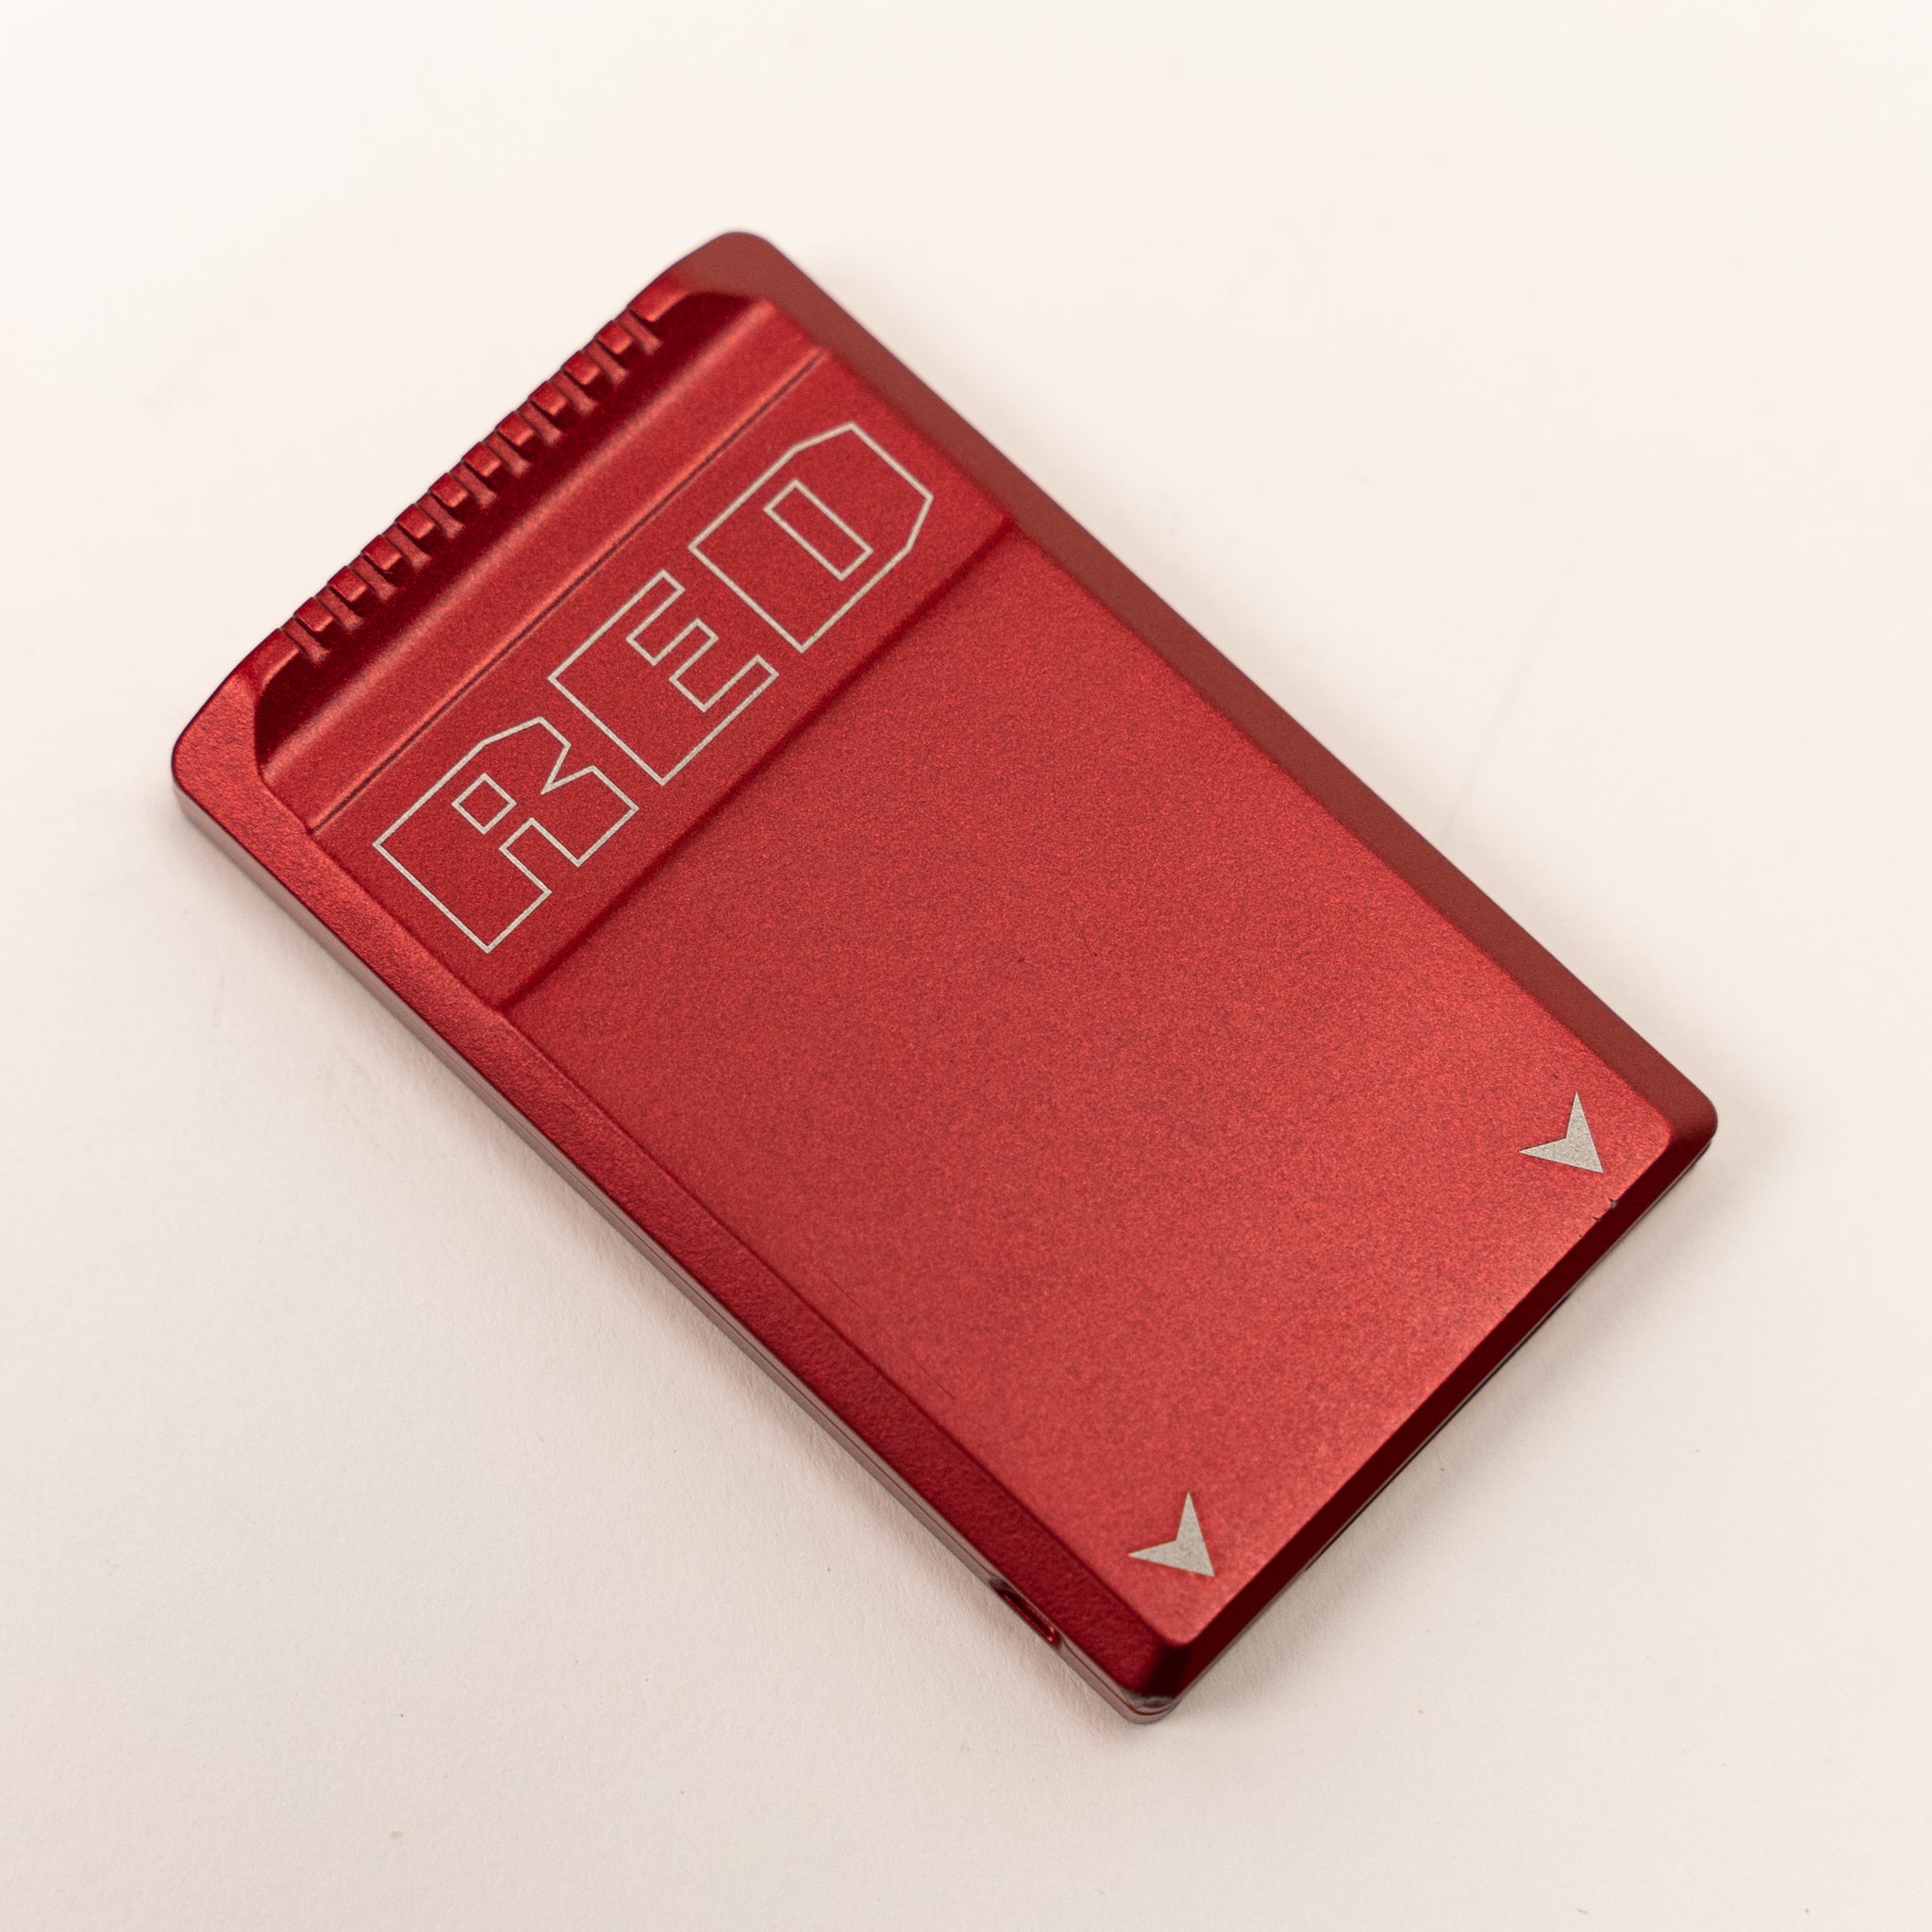 RED MINI-MAG 480GB MEDIA SSD CARD - CinemaCameras.com